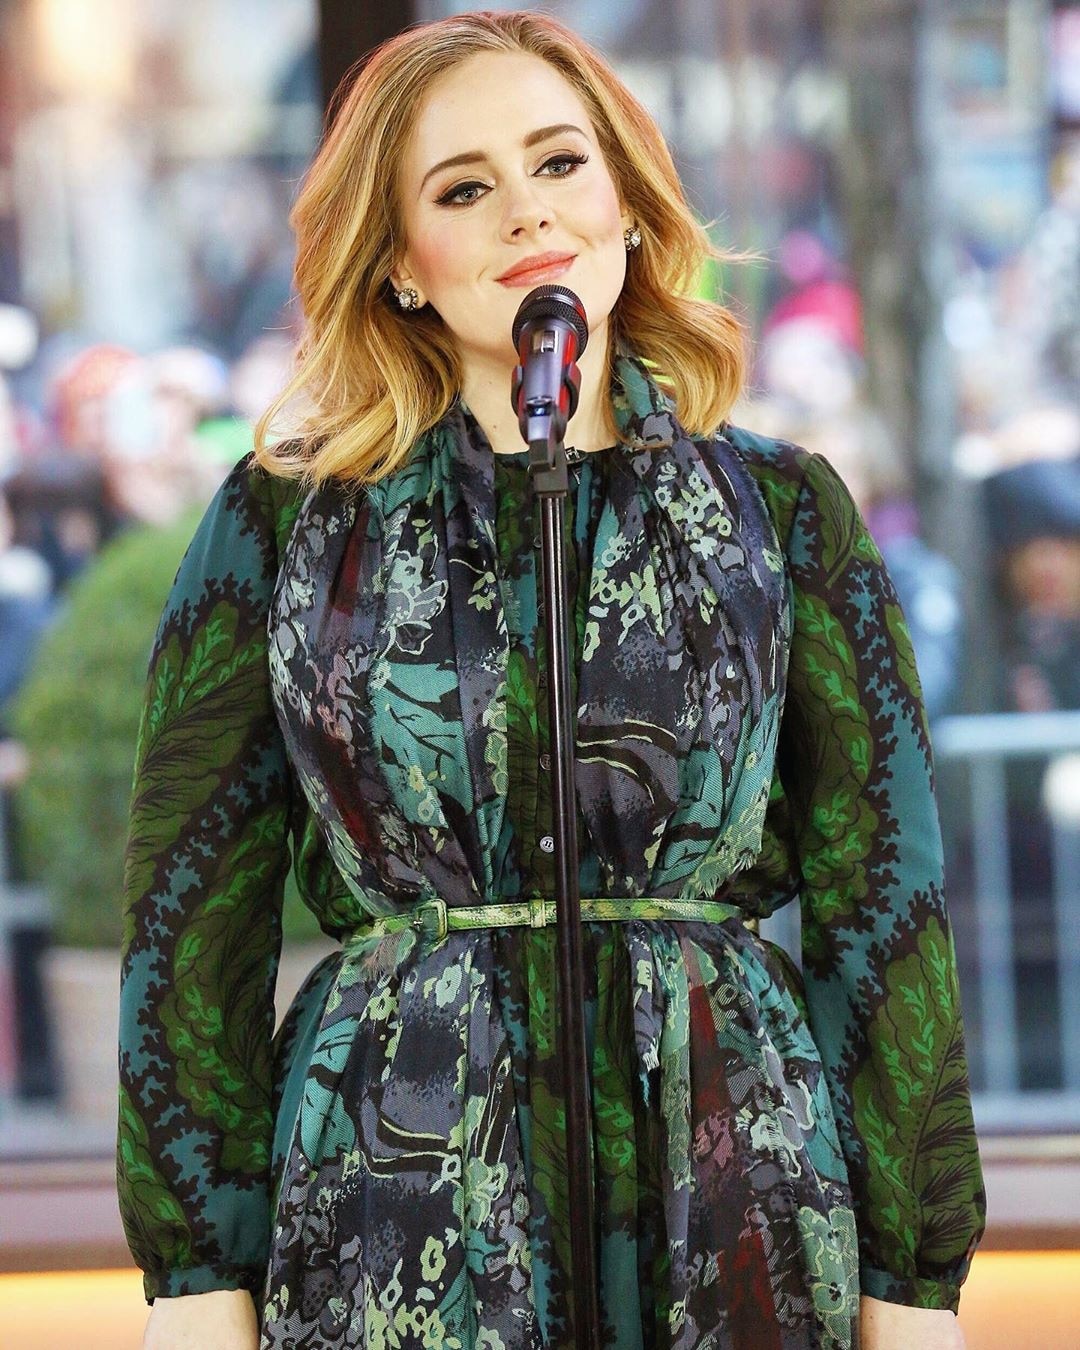 Adele trends on social media over assumed album release #frenzy